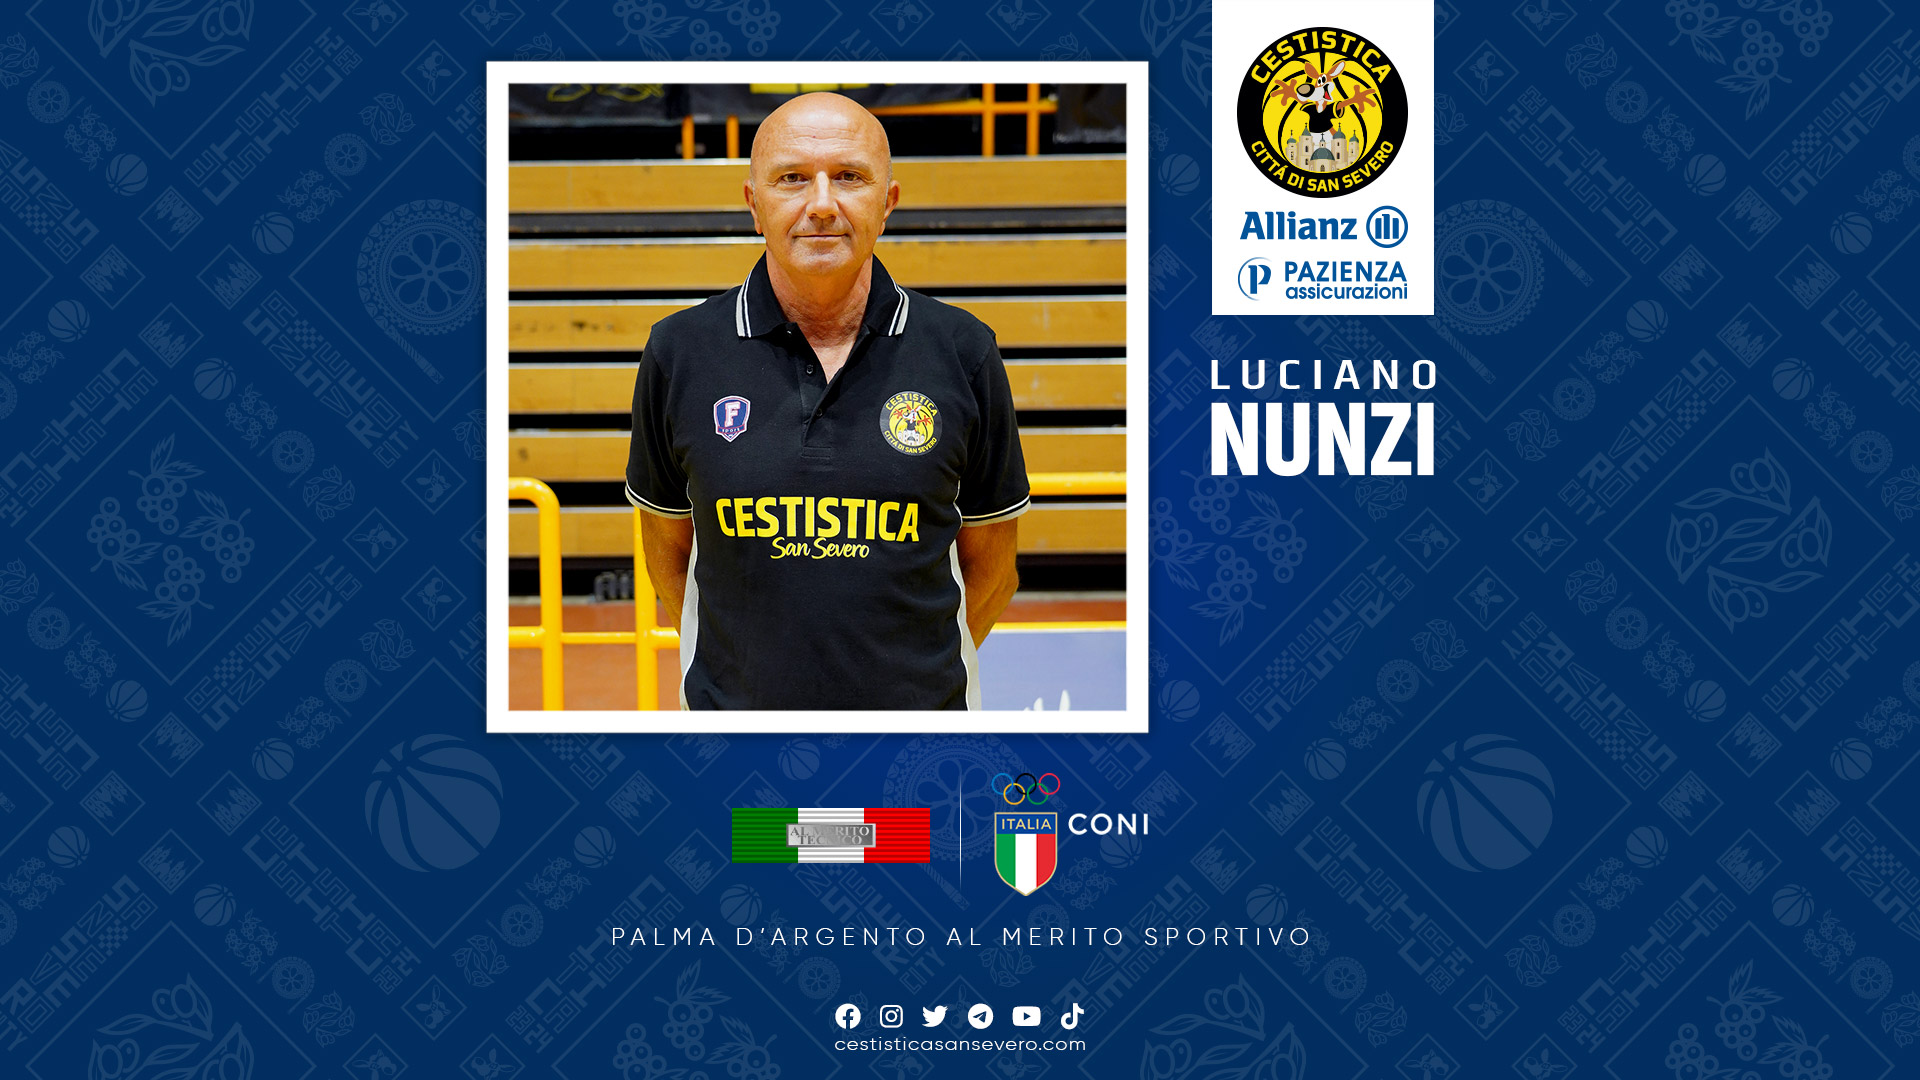 Luciano Nunzi, coach dell’Allianz Pazienza Cestistica San Severo, insignito della Palma d’Argento dal Coni Lazio